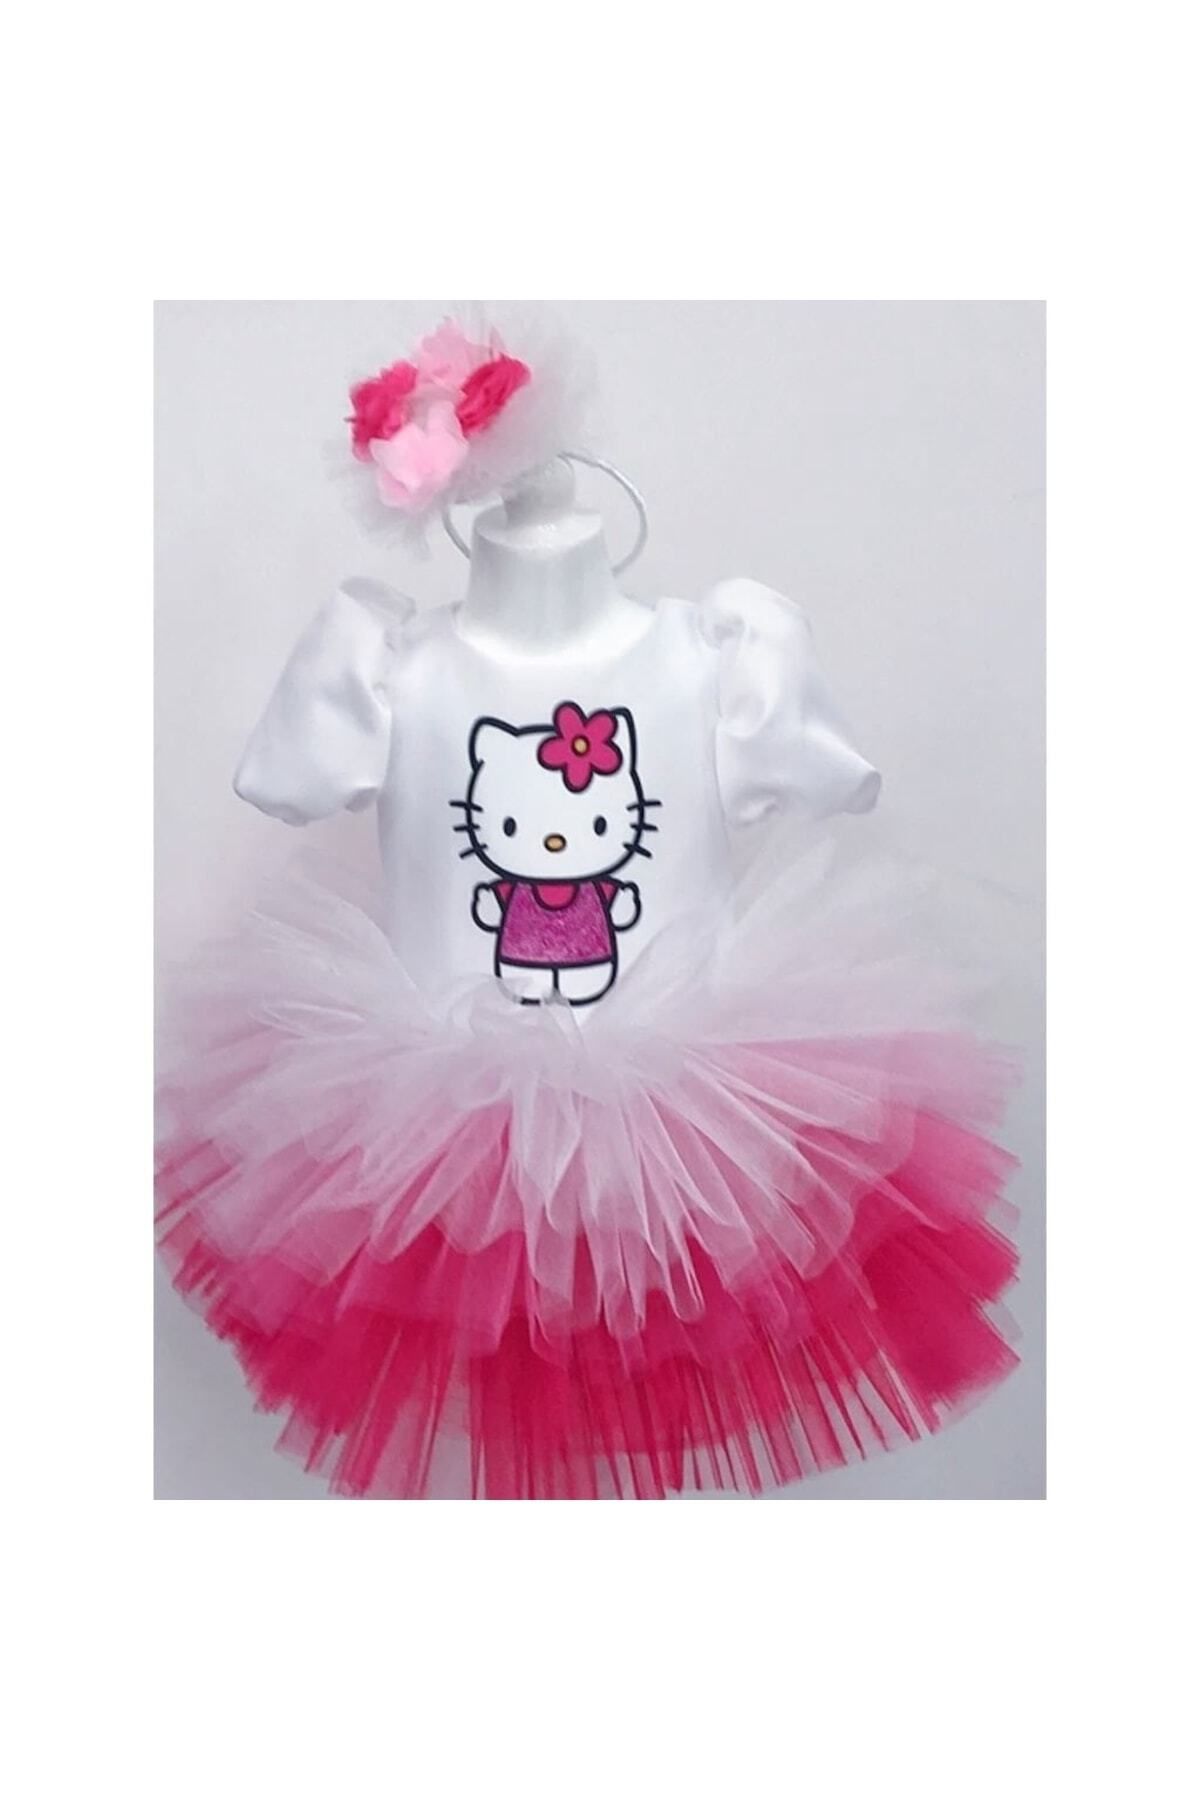 YAĞMUR KOStütüM Hello Kitty Baskılı Çocuk Bebek Doğumgünü Elbise Parti Kostüm